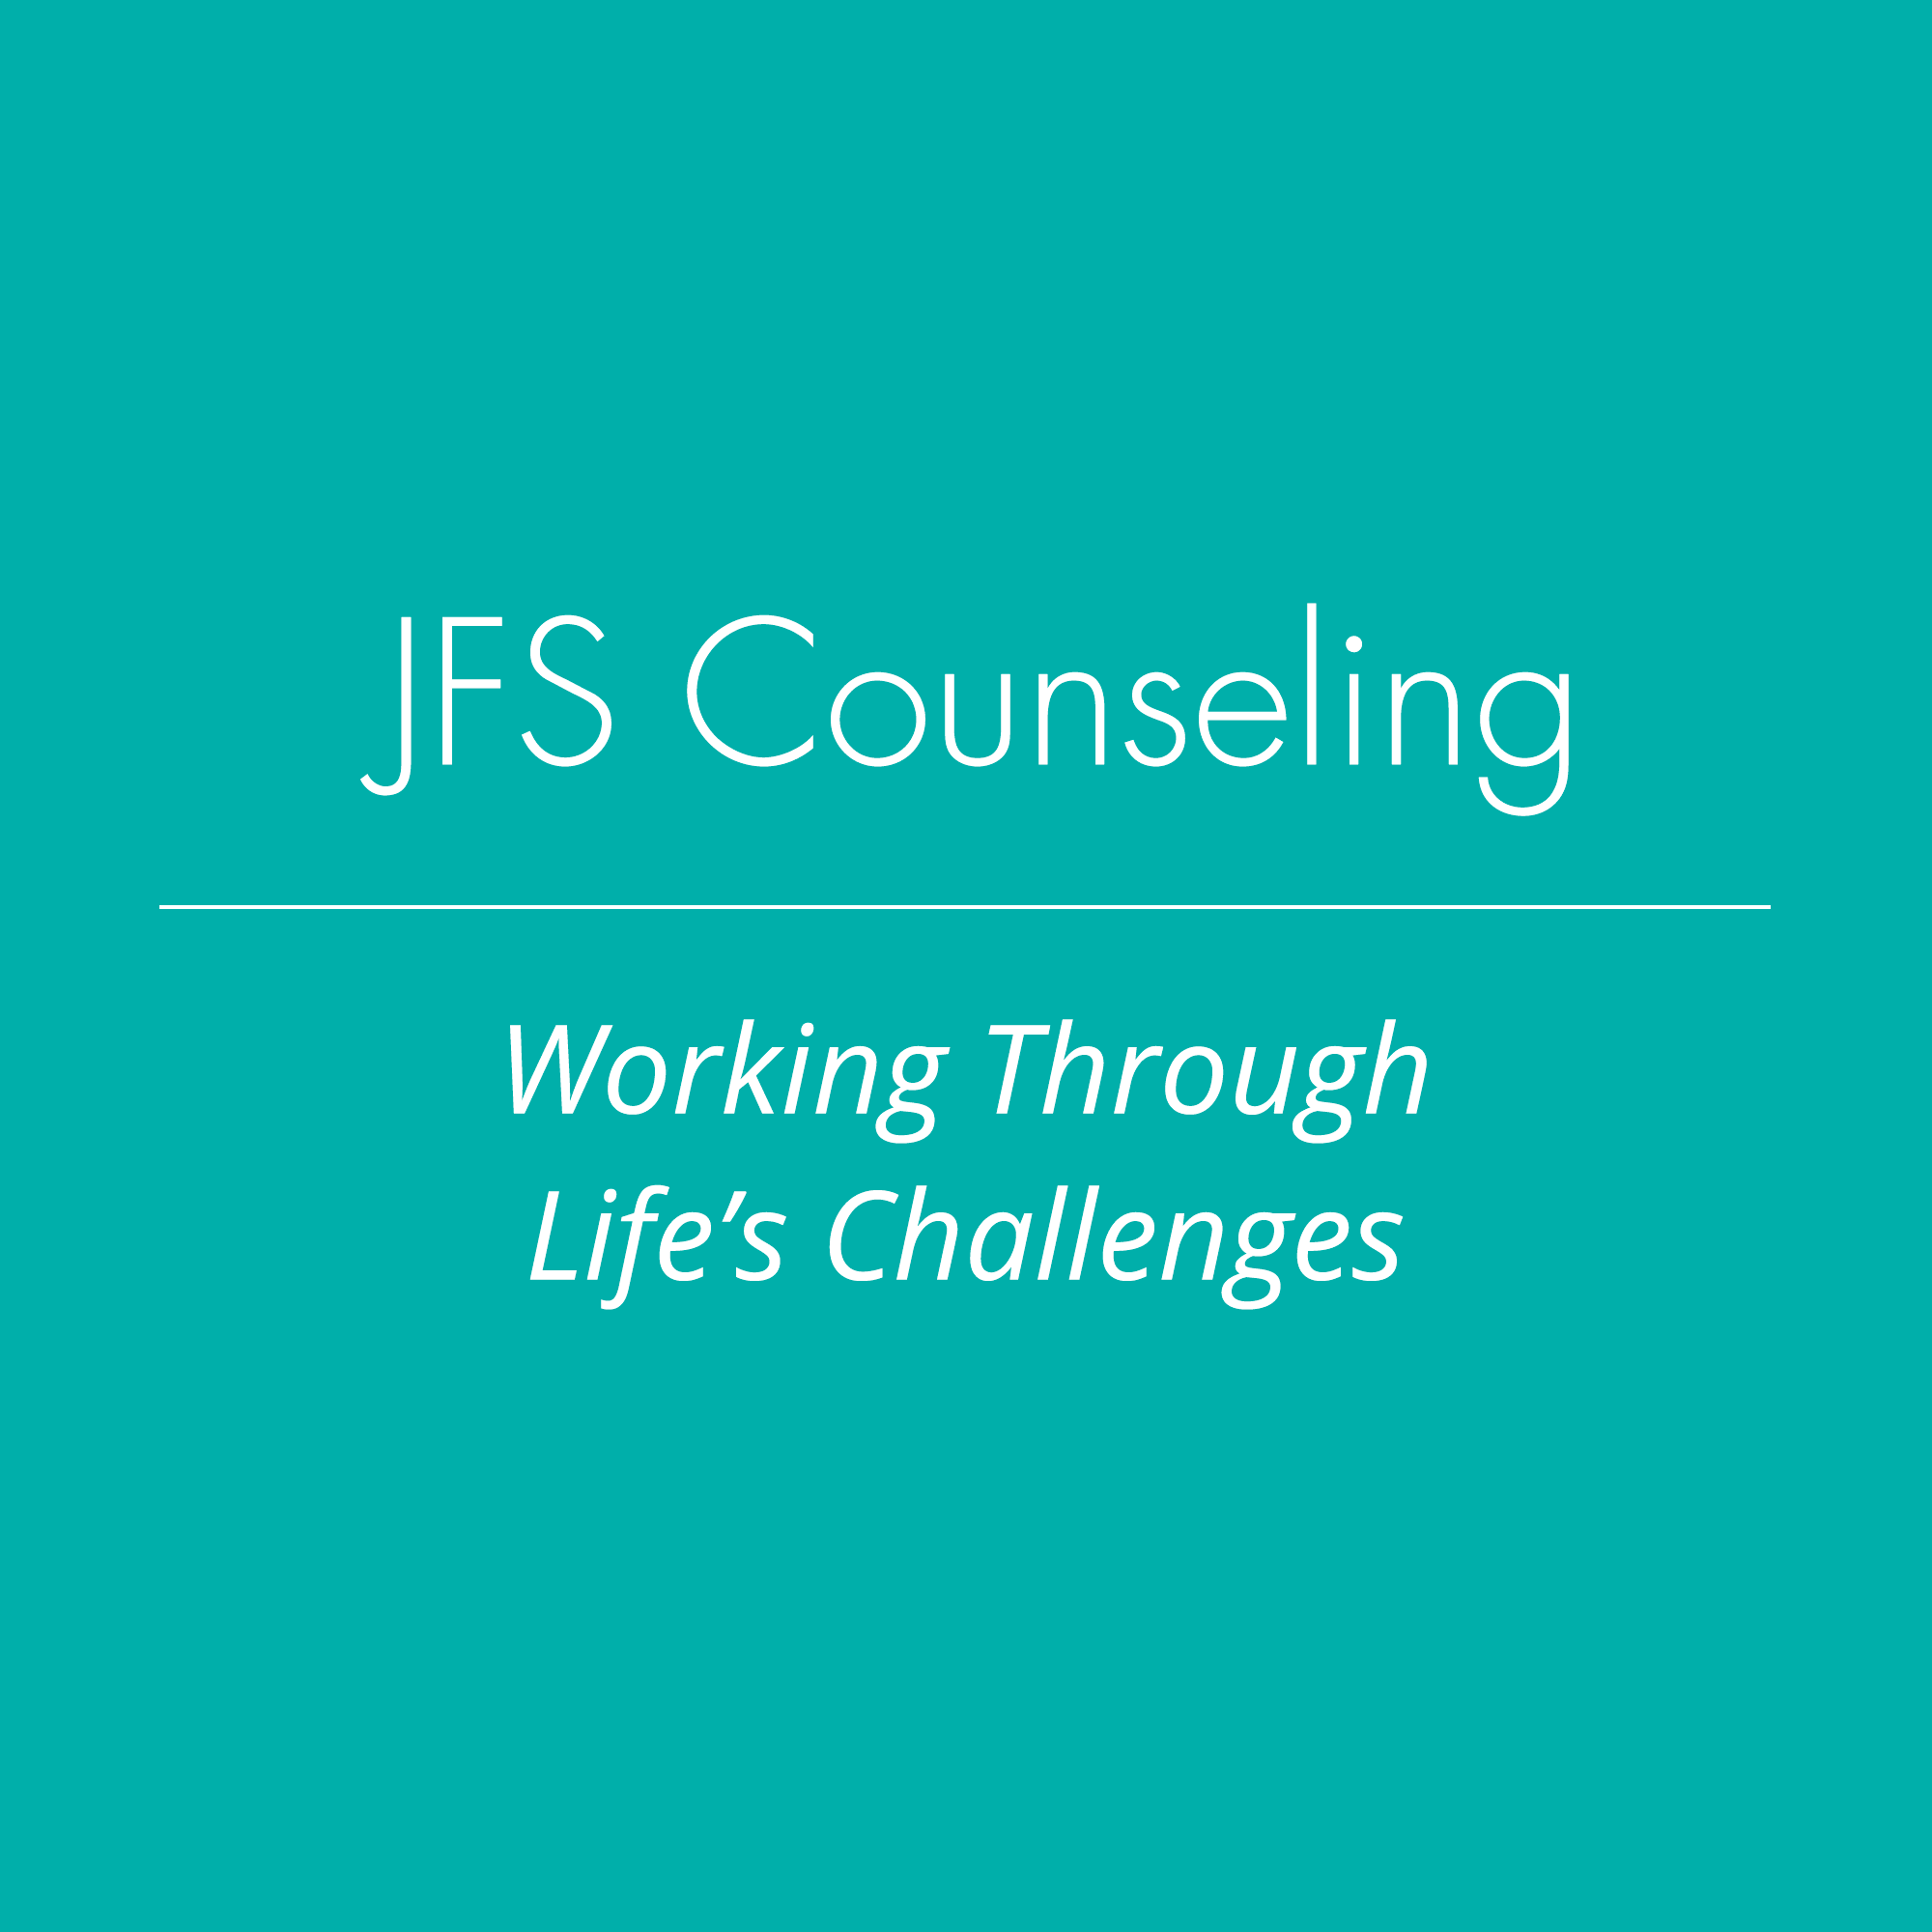 JFS Conseling definition